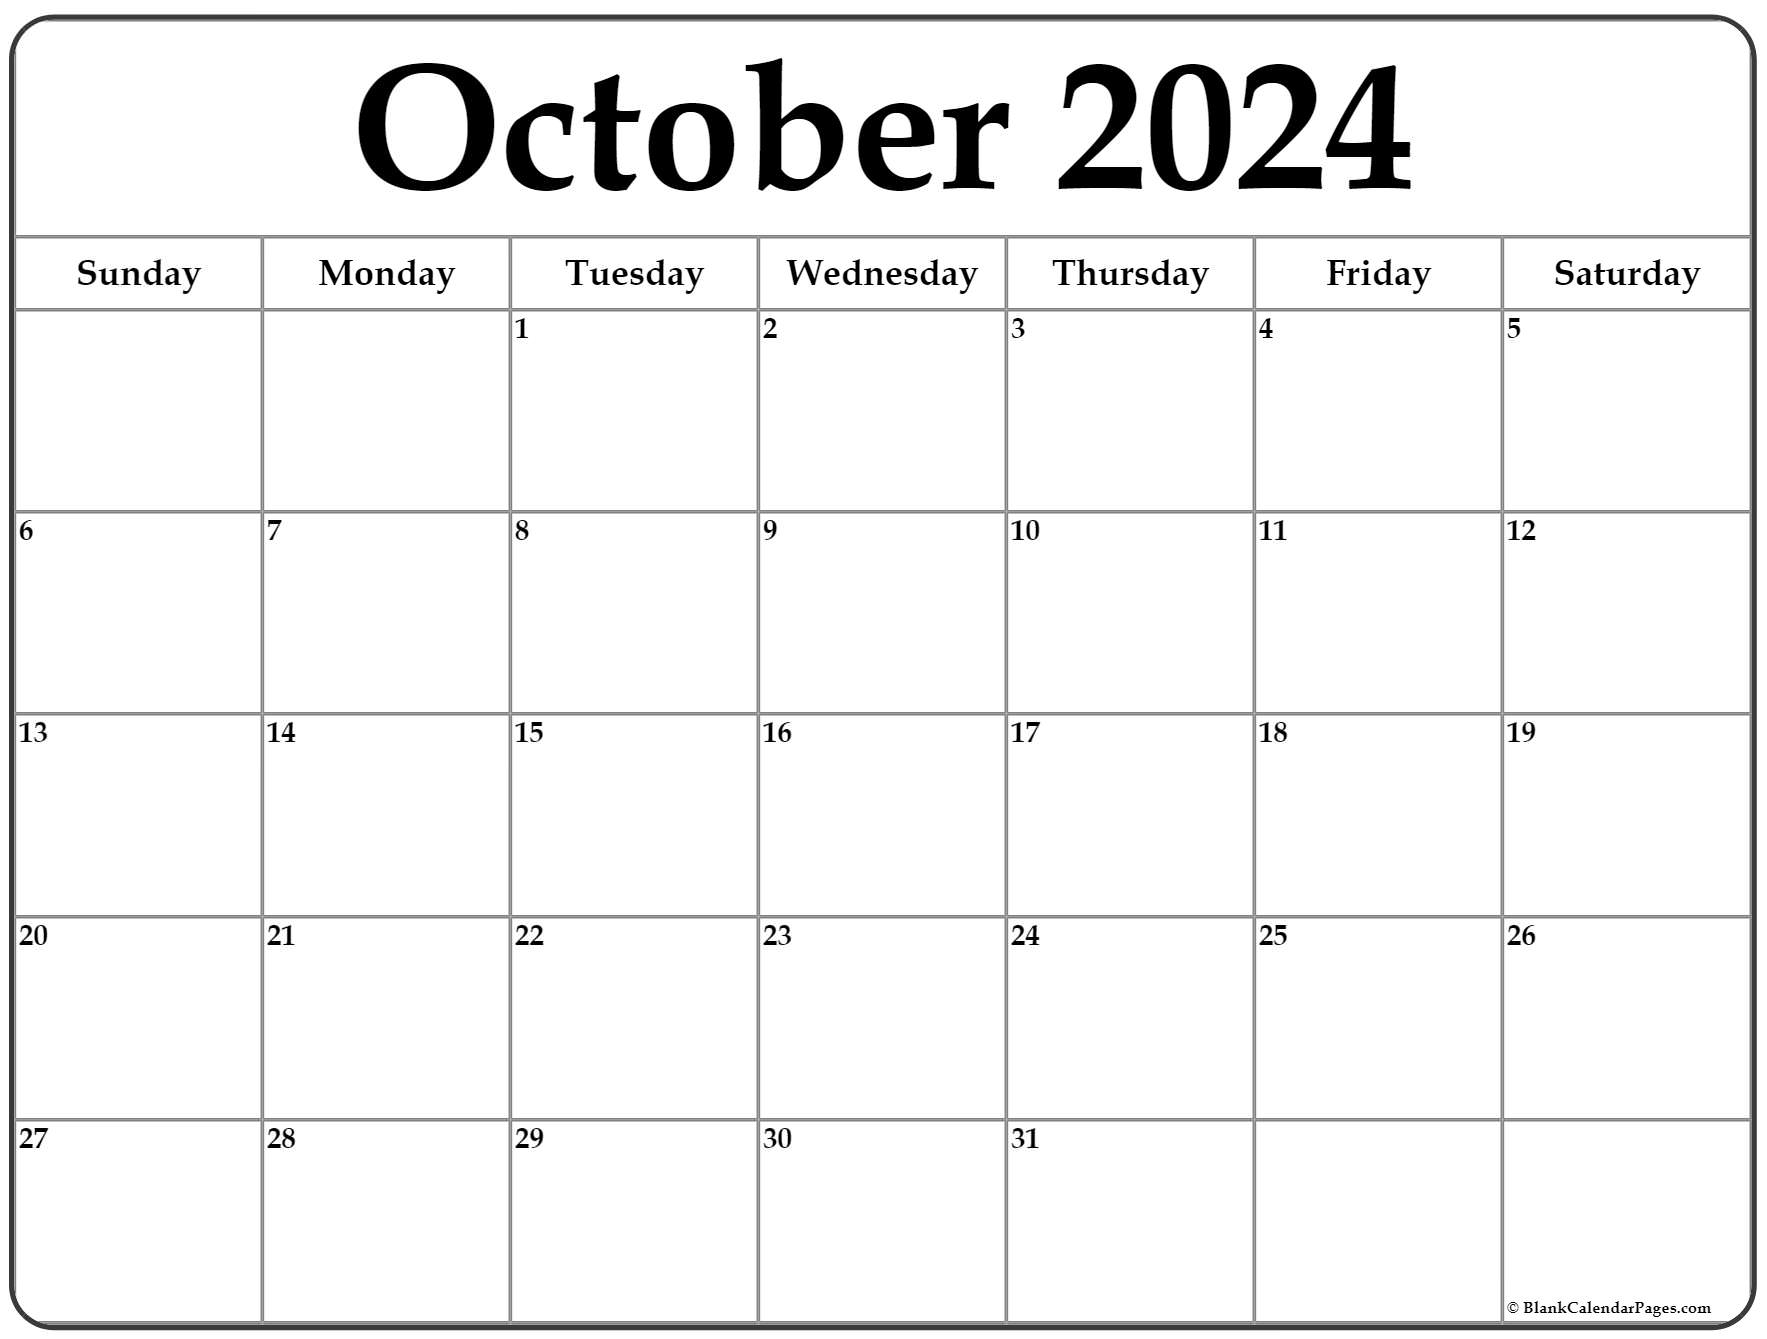 October Calendar 2022 Printable October 2022 Calendar | Free Printable Calendar Templates